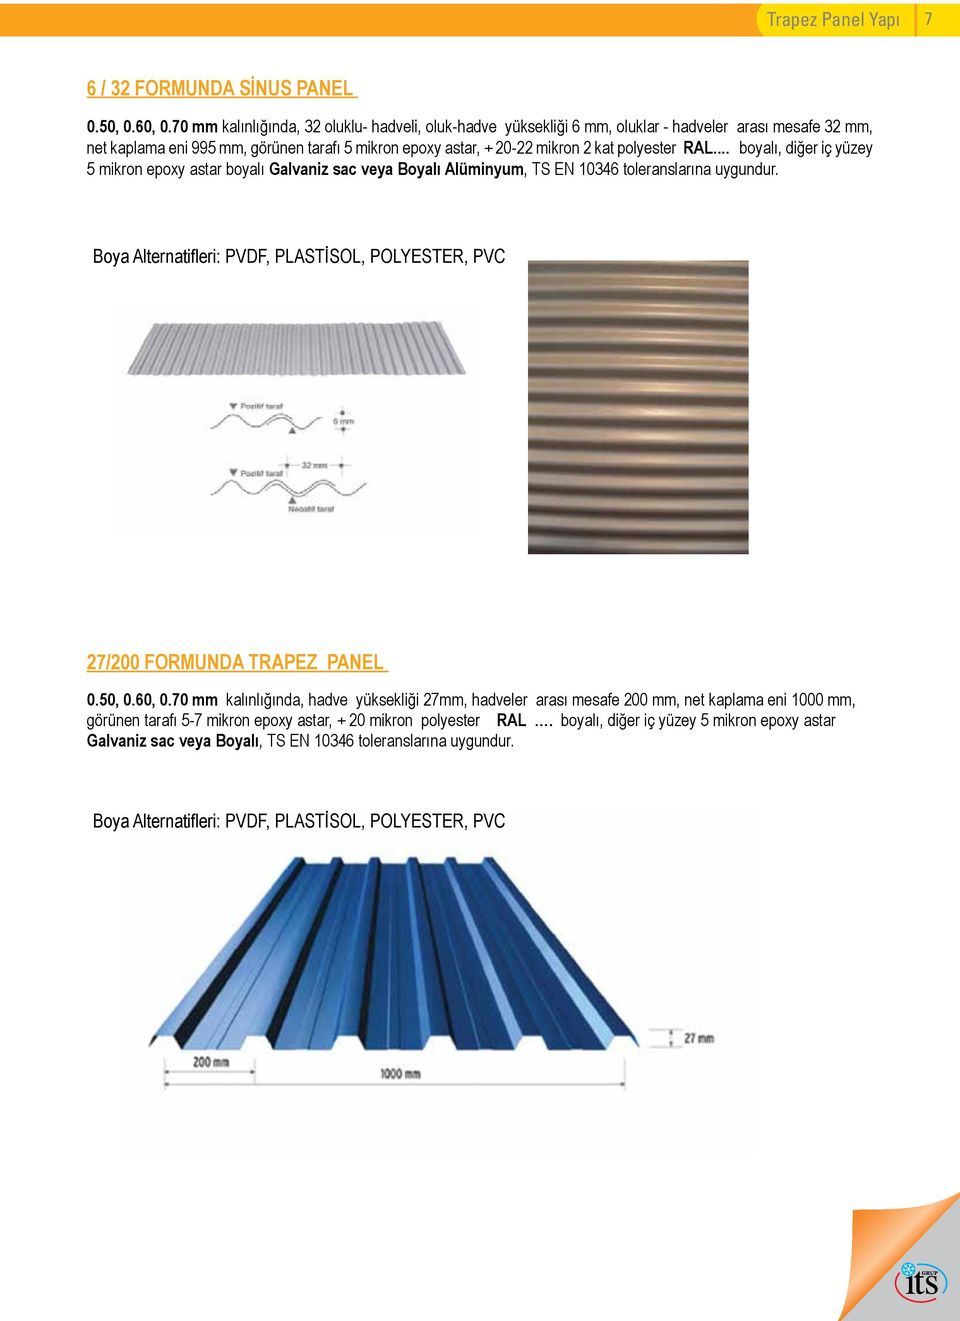 RAL... boyalı, diğer iç yüzey 5 mikron epoxy astar boyalı Galvaniz sac veya Boyalı Alüminyum, TS EN 10346 toleranslarına uygundur.